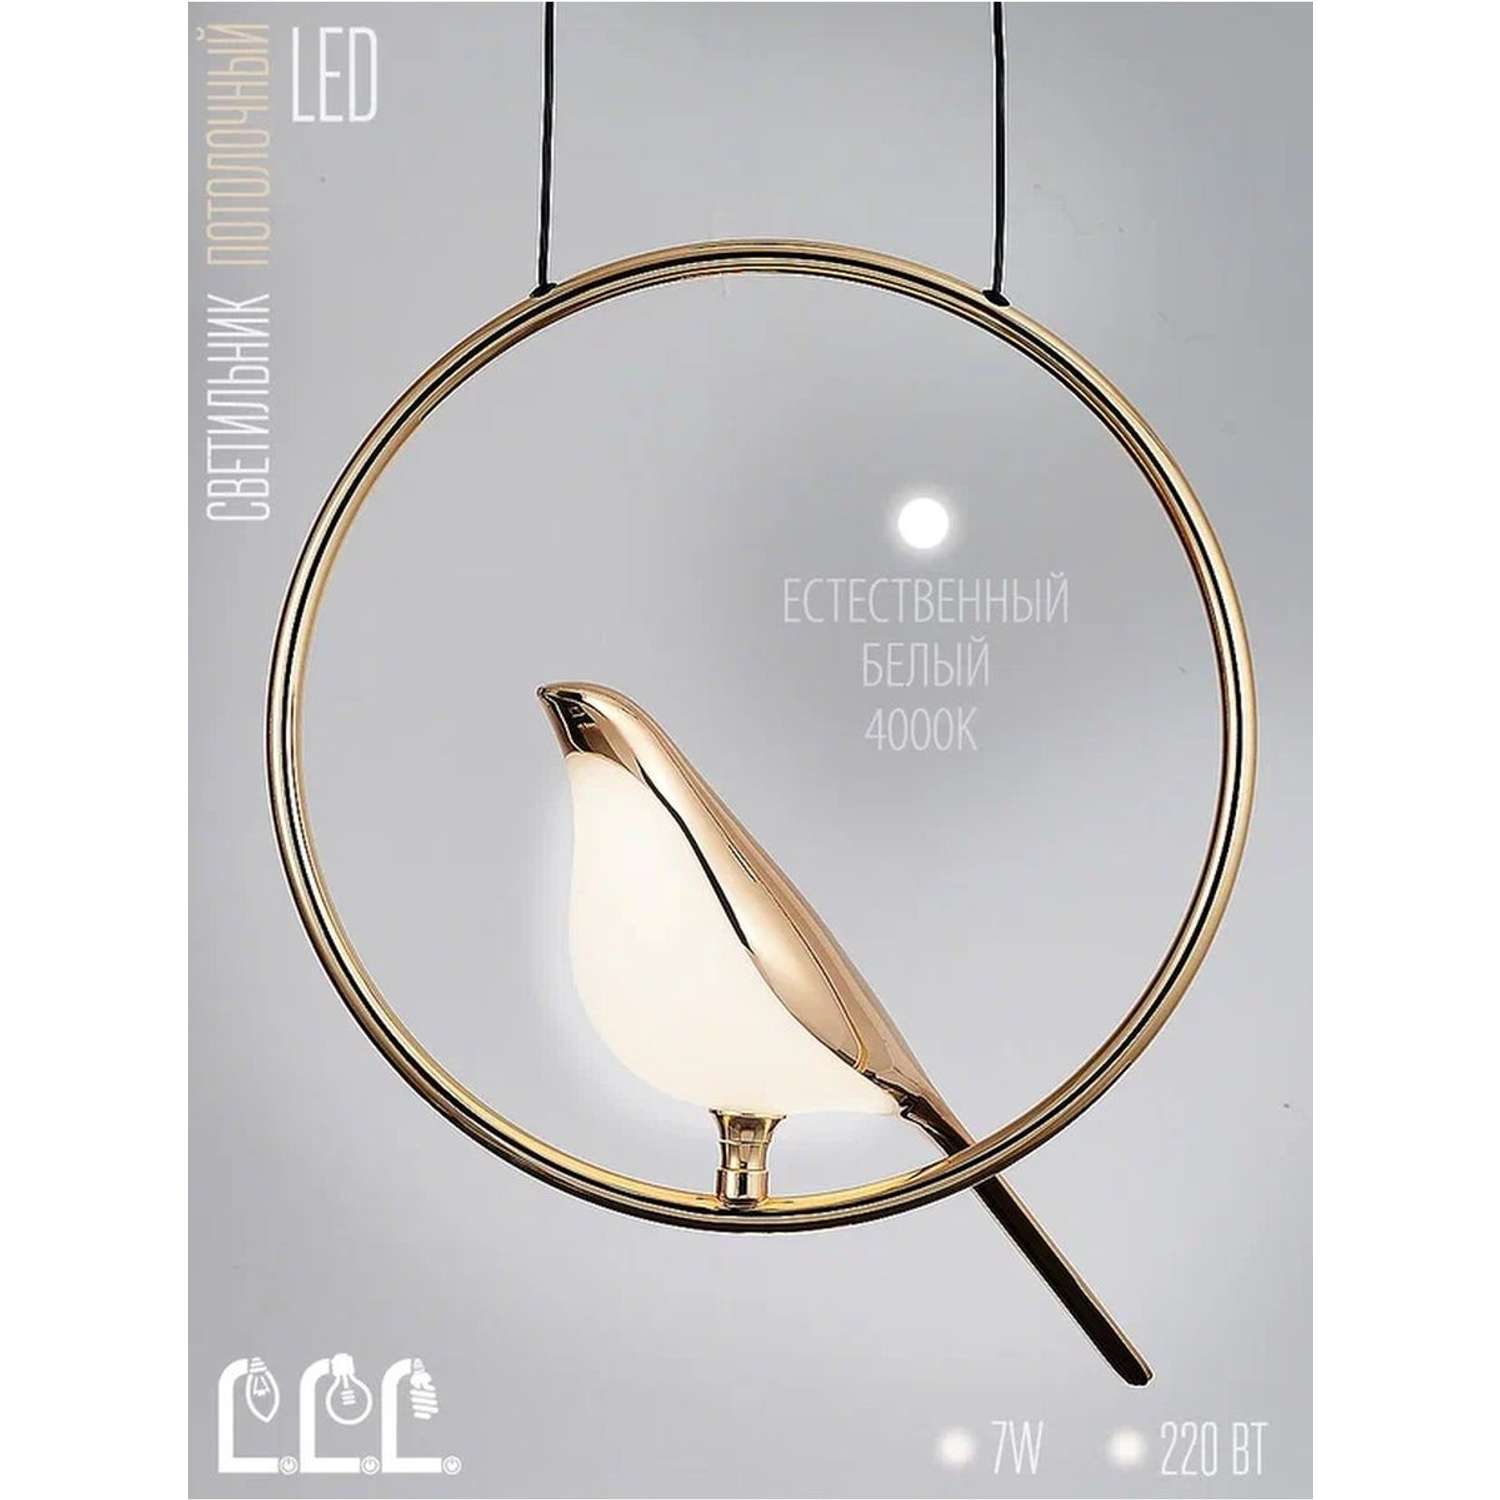 Потолочный светильник LLL KD91107 золотой никель Птицы с вращением на 360 градусов - фото 4